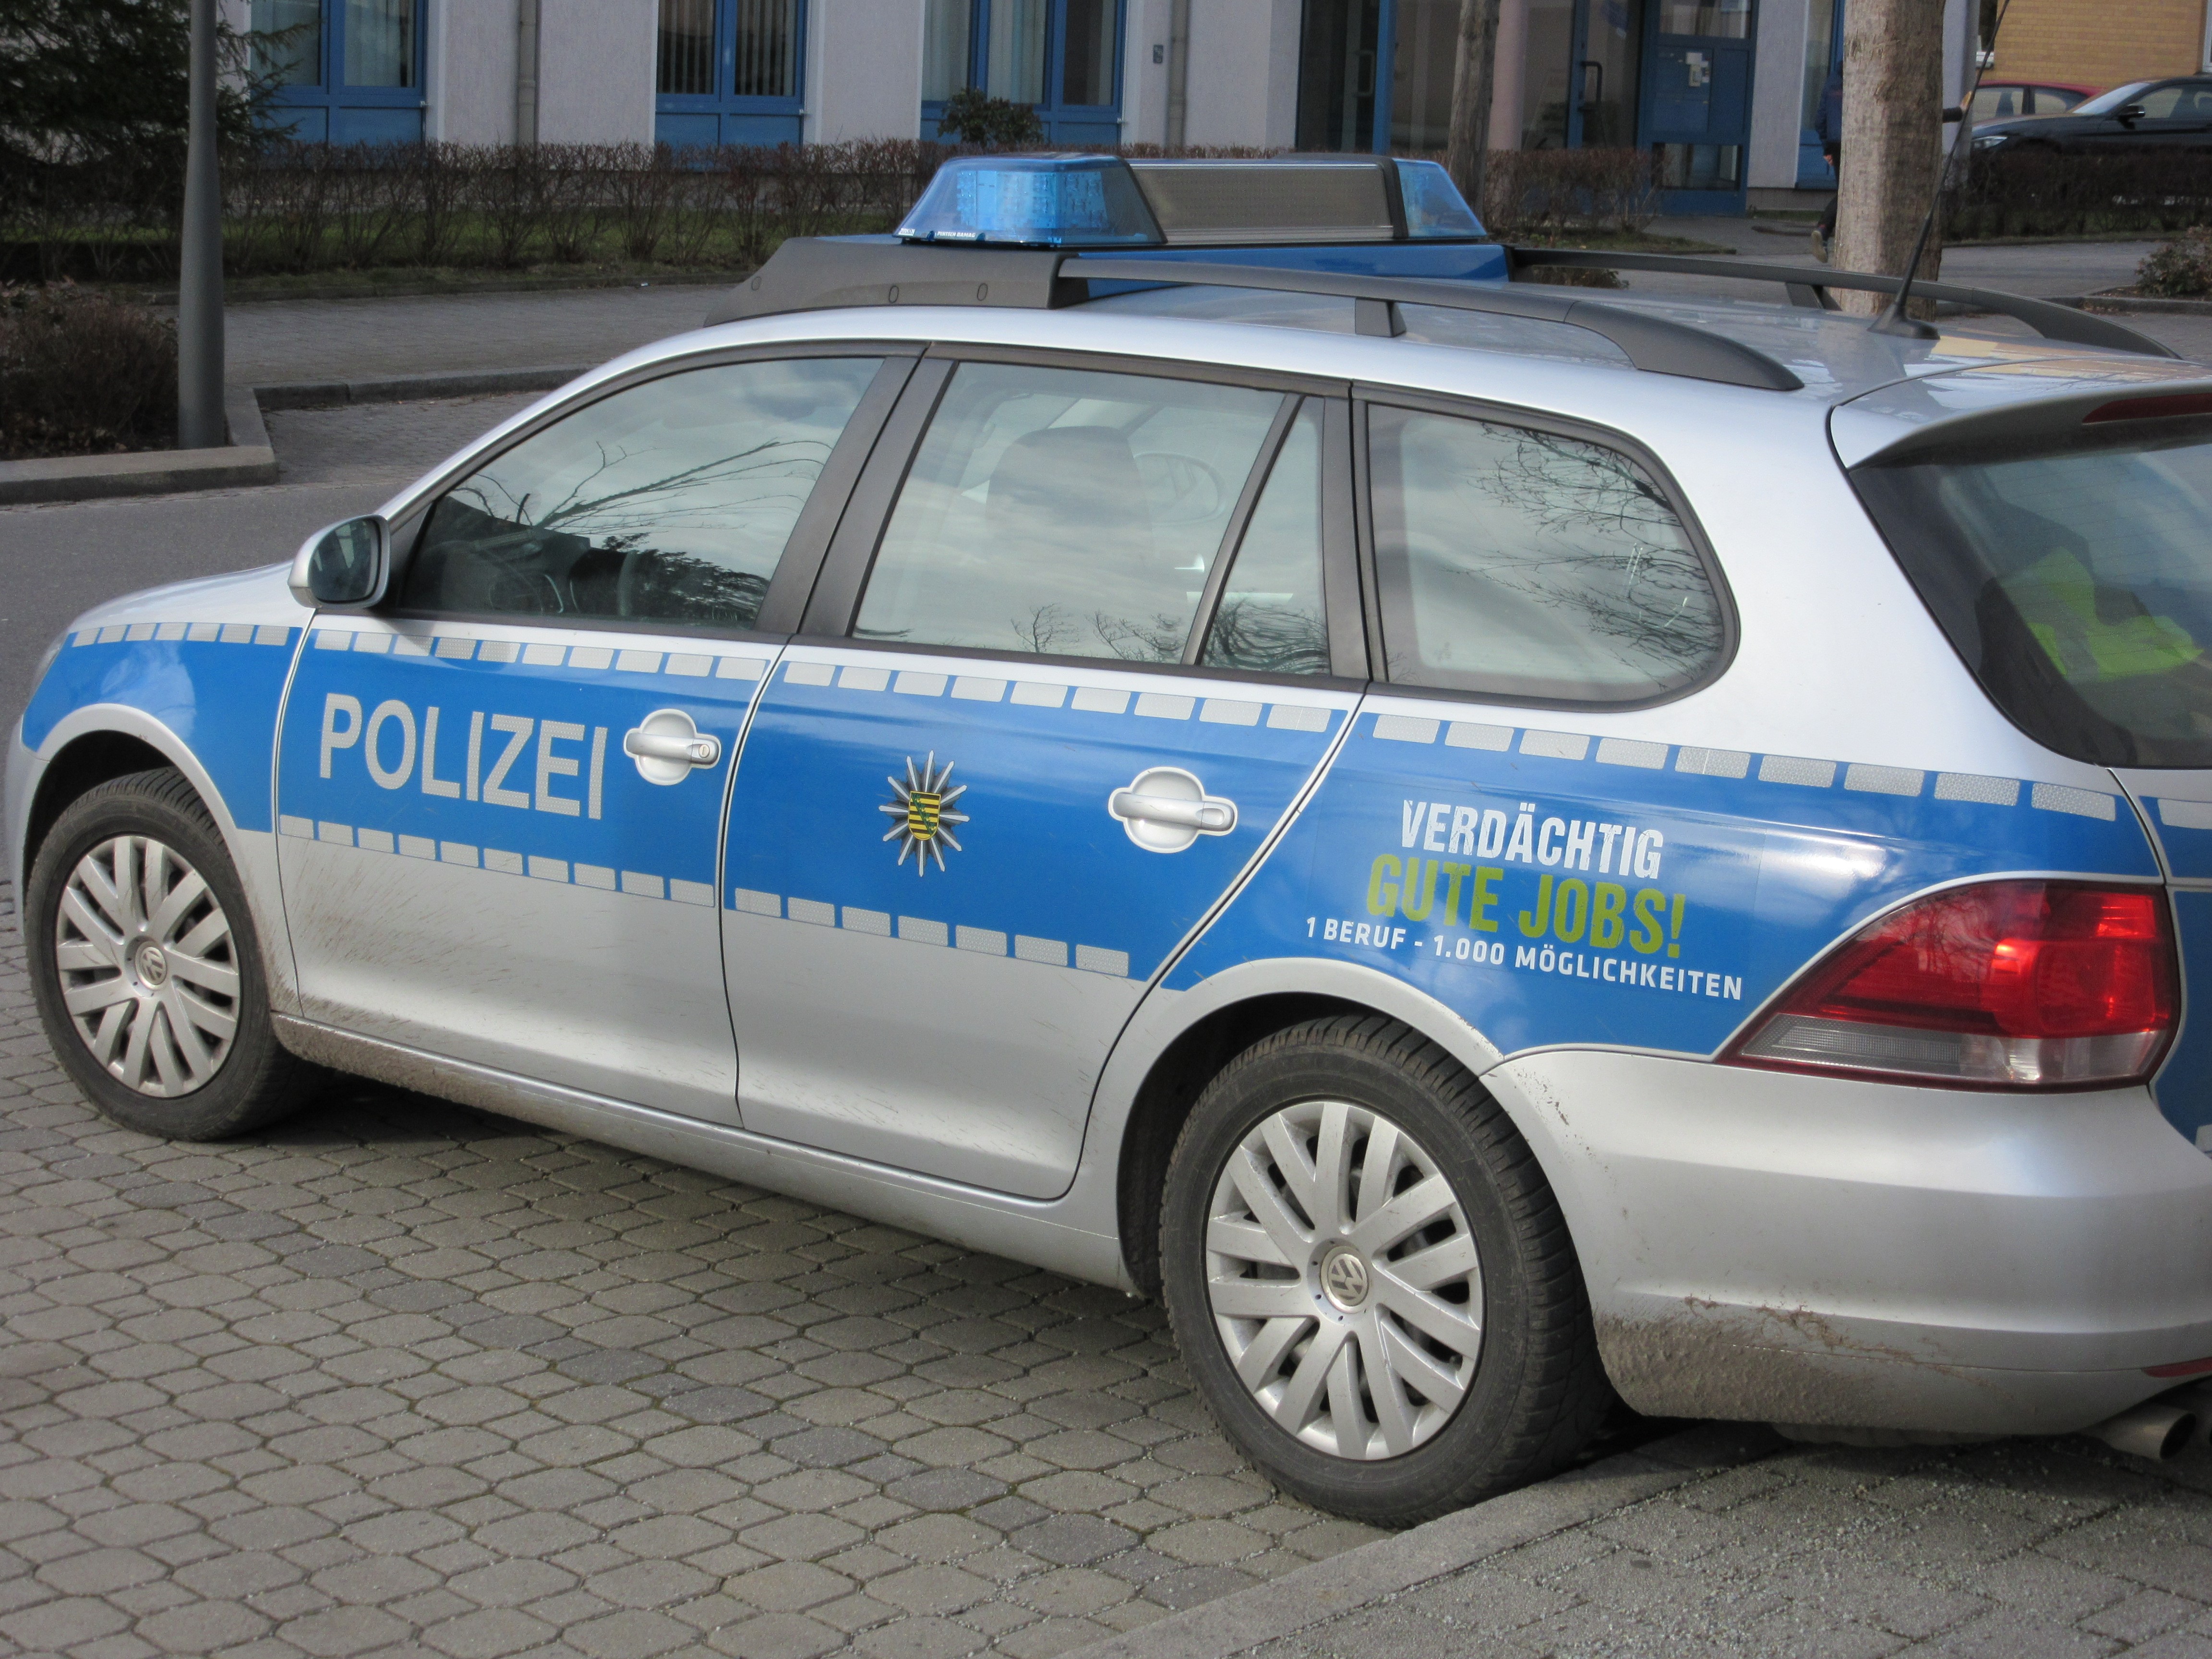 Einsatz von Bodycams durch sächsische Polizei ist rechtswidrig